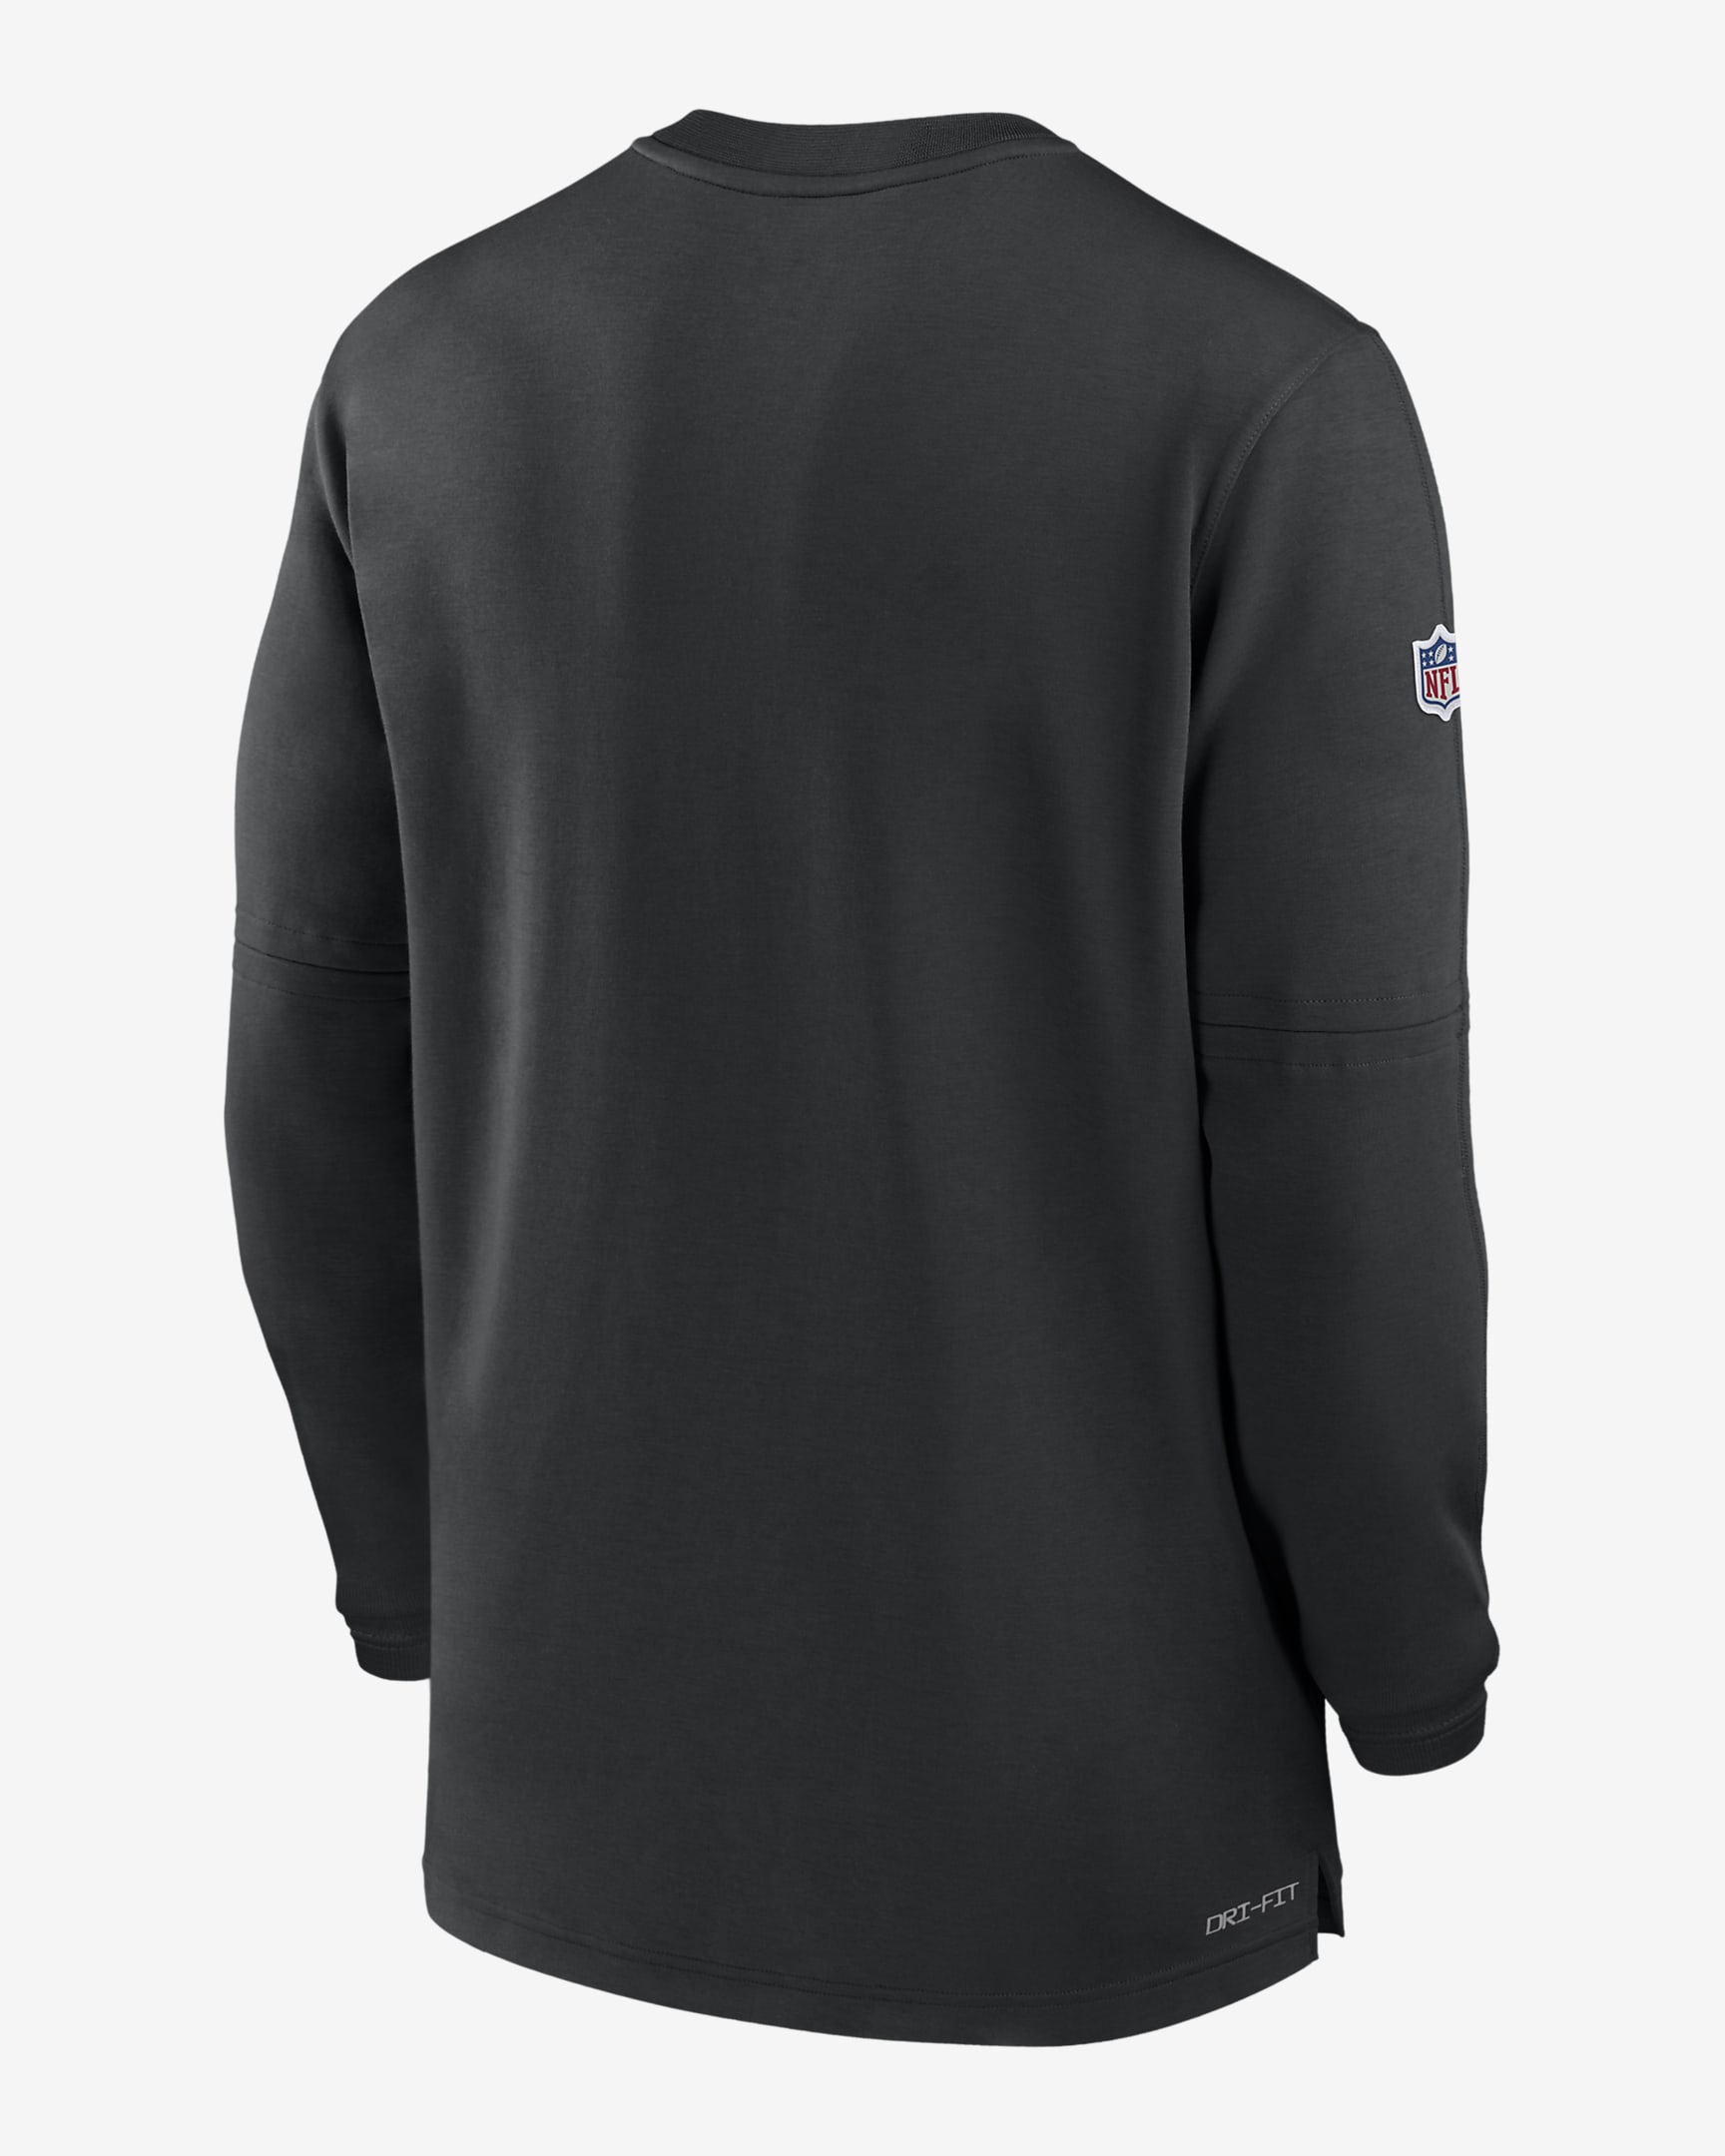 Las Vegas Raiders Sideline Mens Nike Dri Fit Nfl 12 Zip Long Sleeve Top 